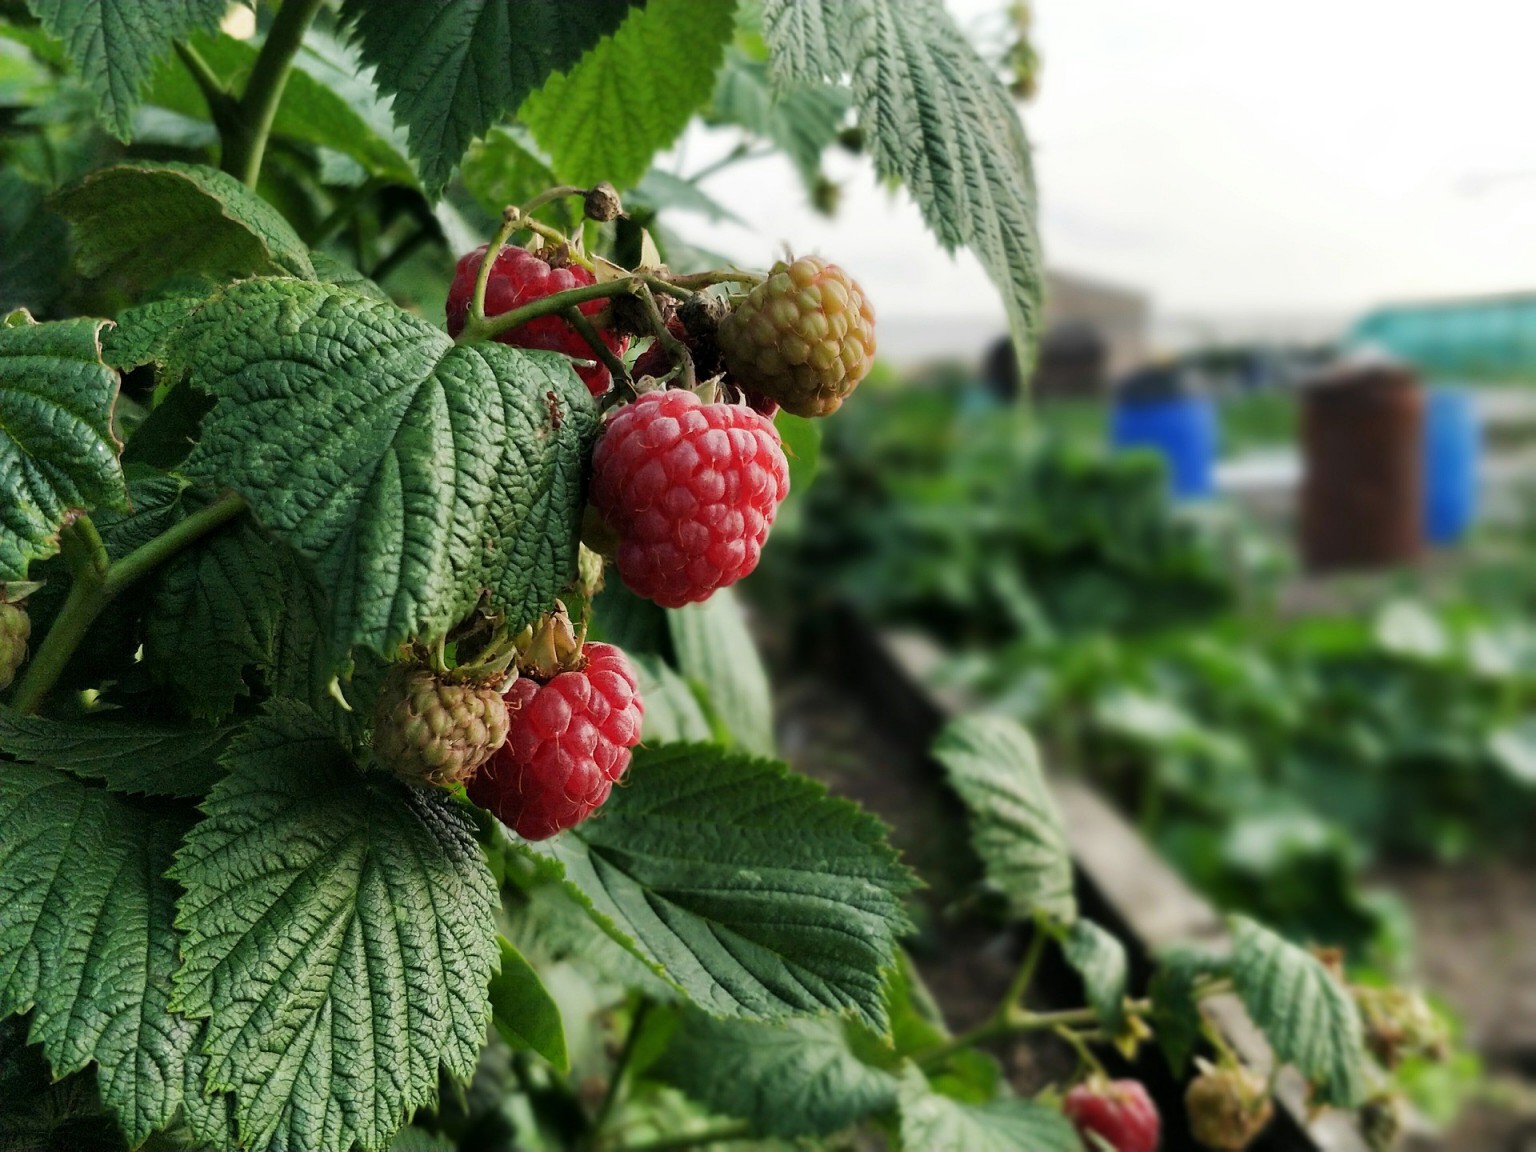 Home grown raspberries